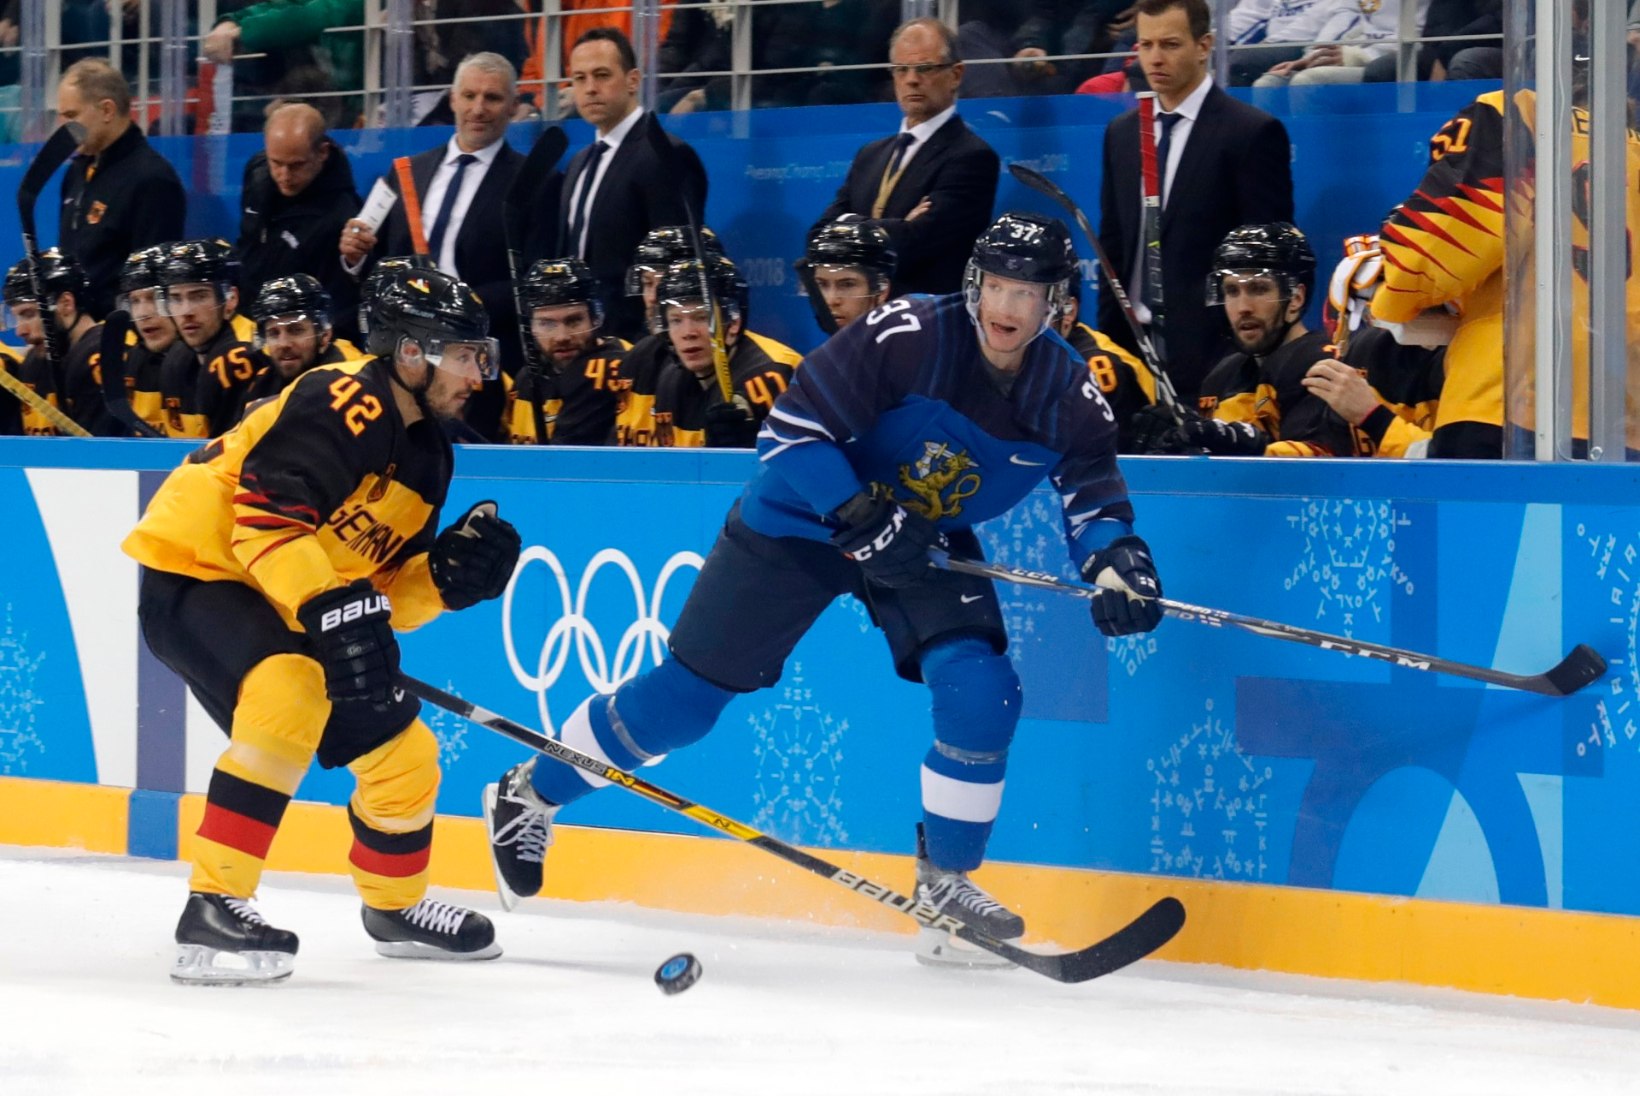 Soome ja Rootsi alustasid Pyeongchangi hokiturniiri kindlate võitudega